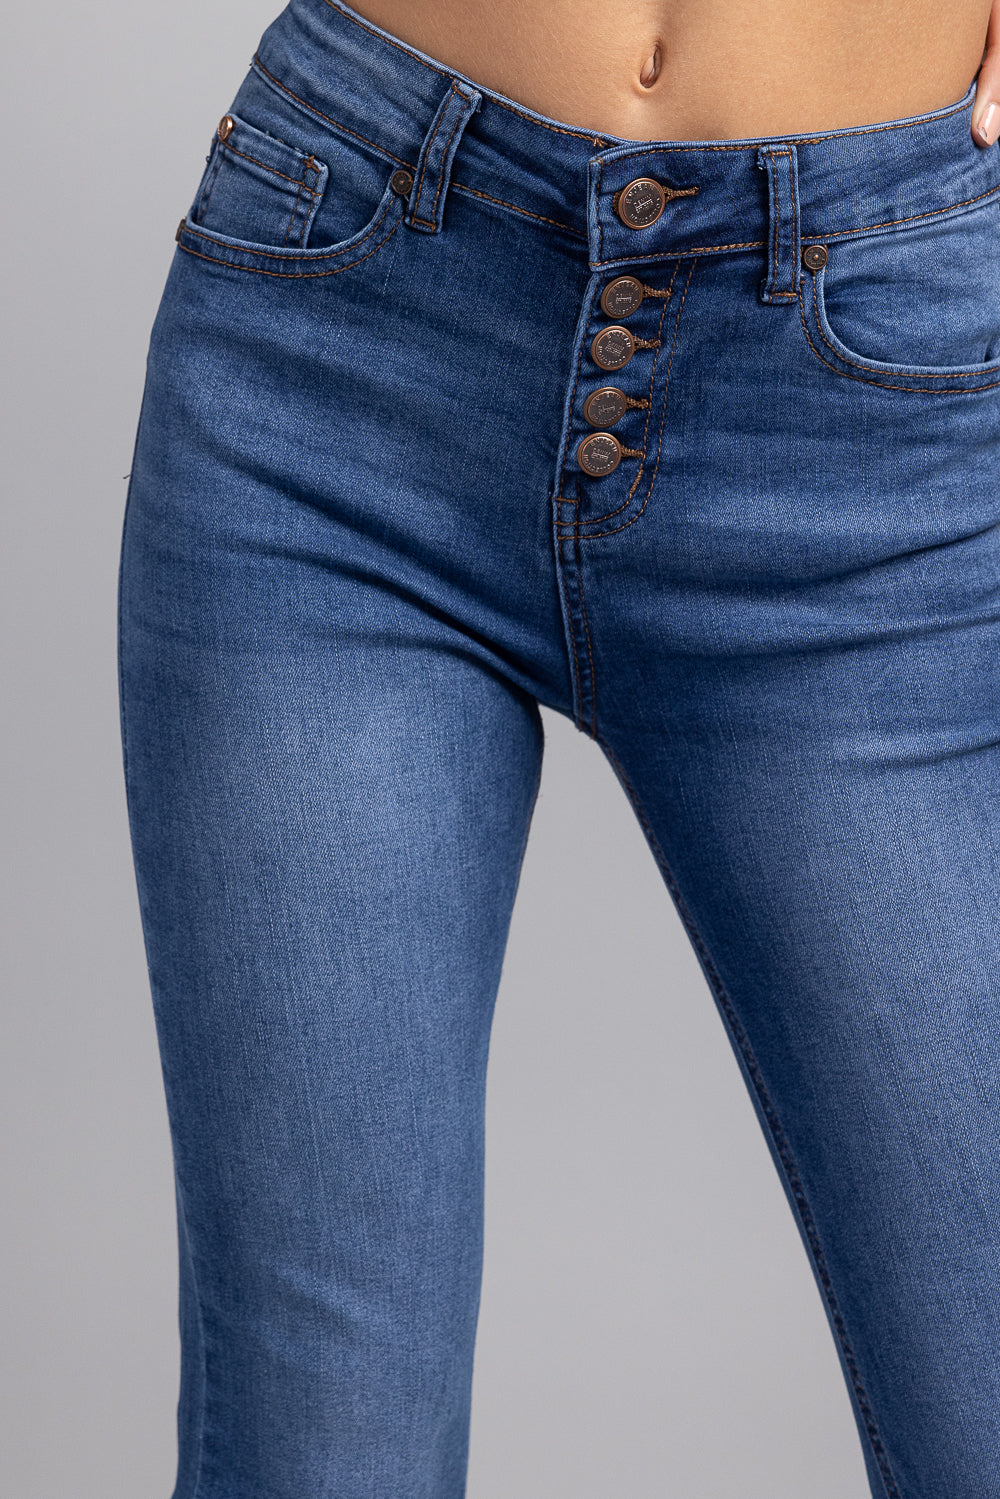 Jeans bootcut clásicos de tiro alto de los años 70